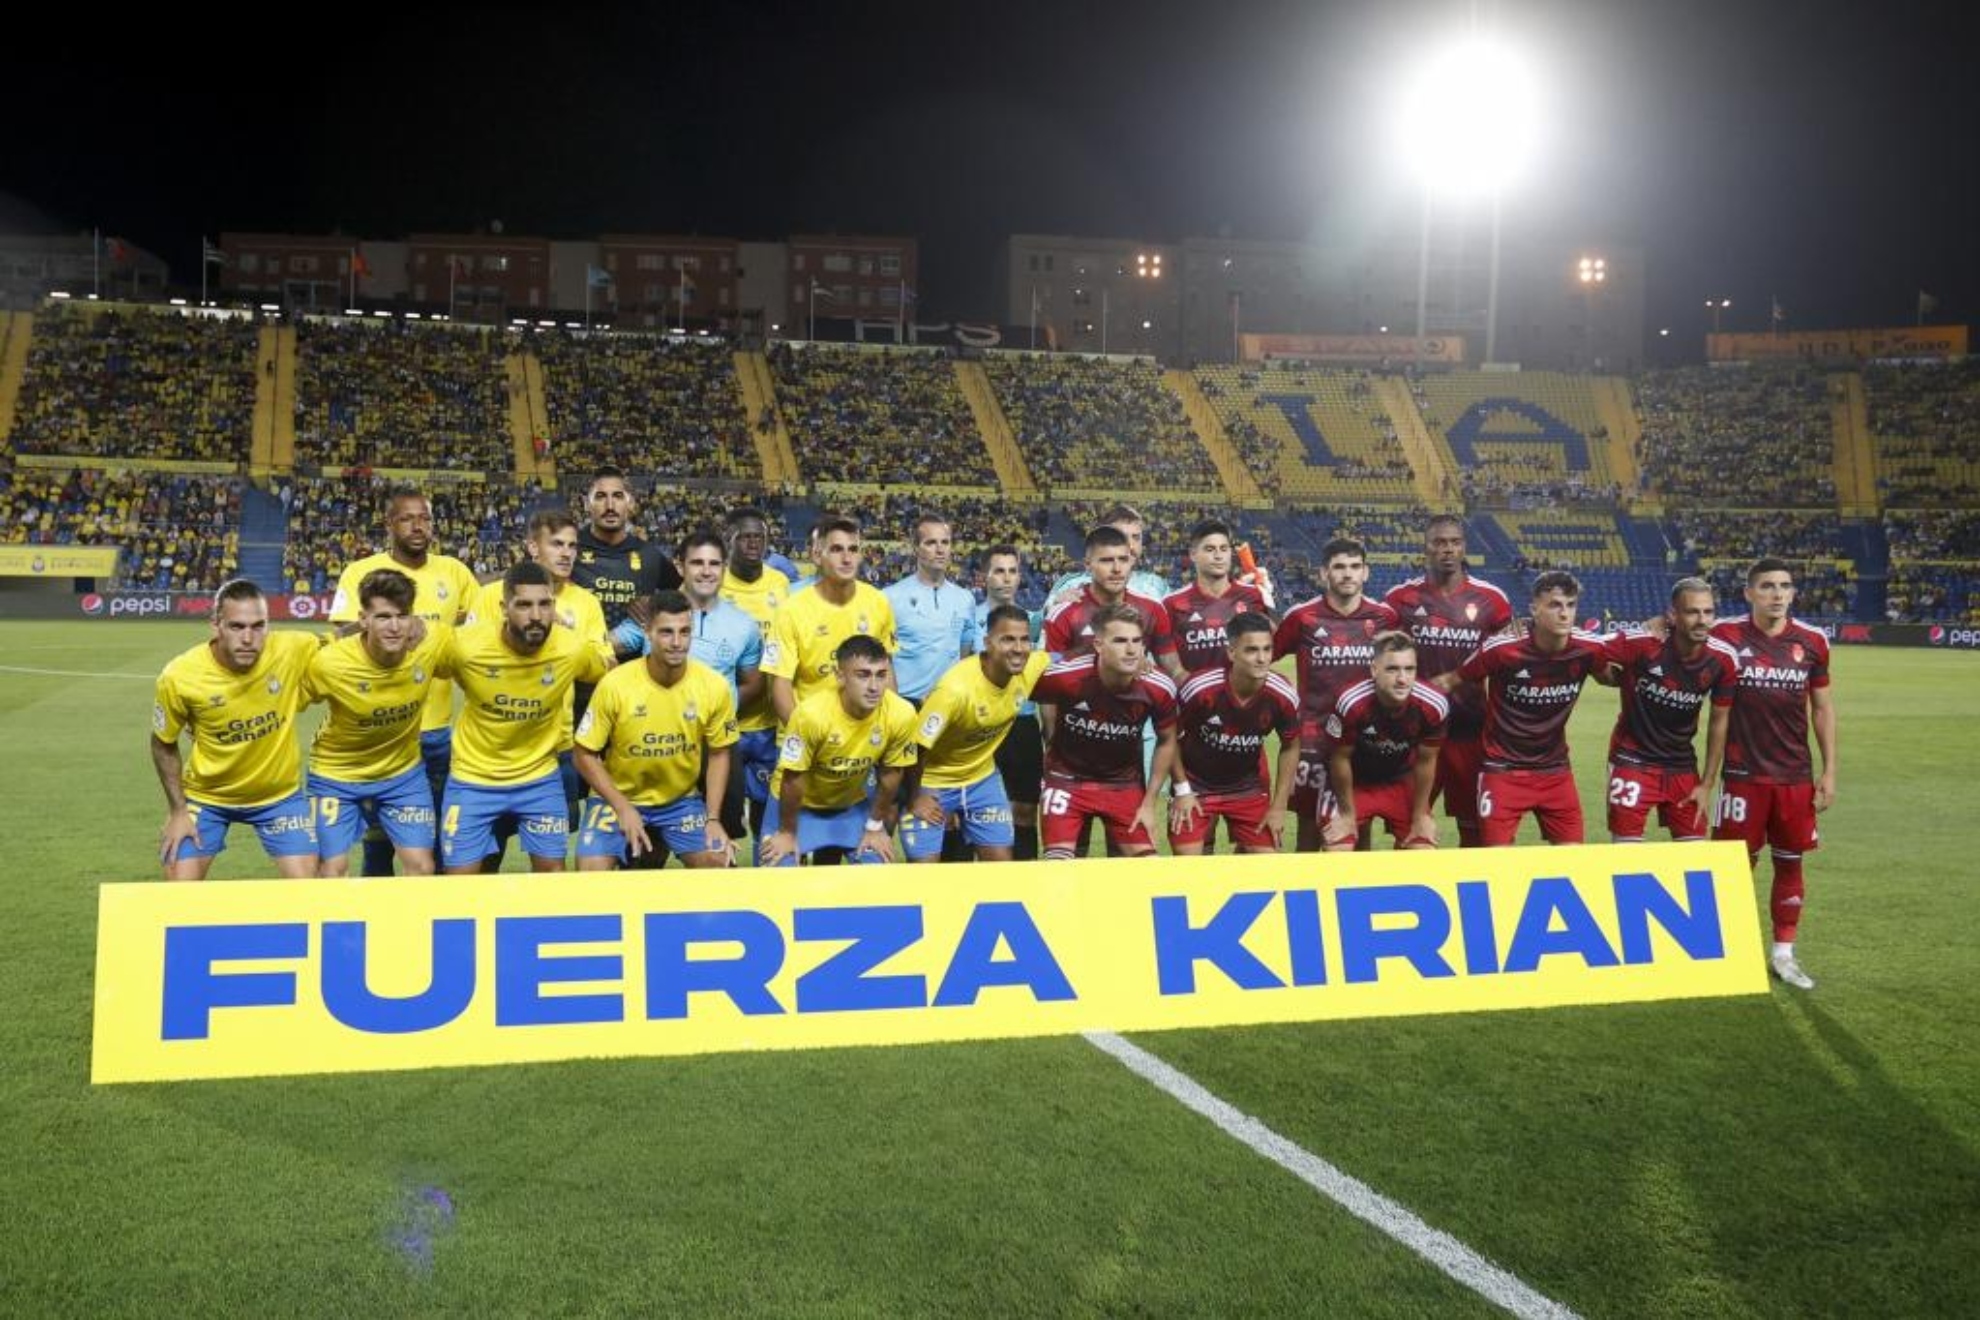 Los jugadores de Las Palmas junto con los del Zaragoza y el cuerpo arbitral homenajean al jugador Kirian/ GERARDO OJEDA